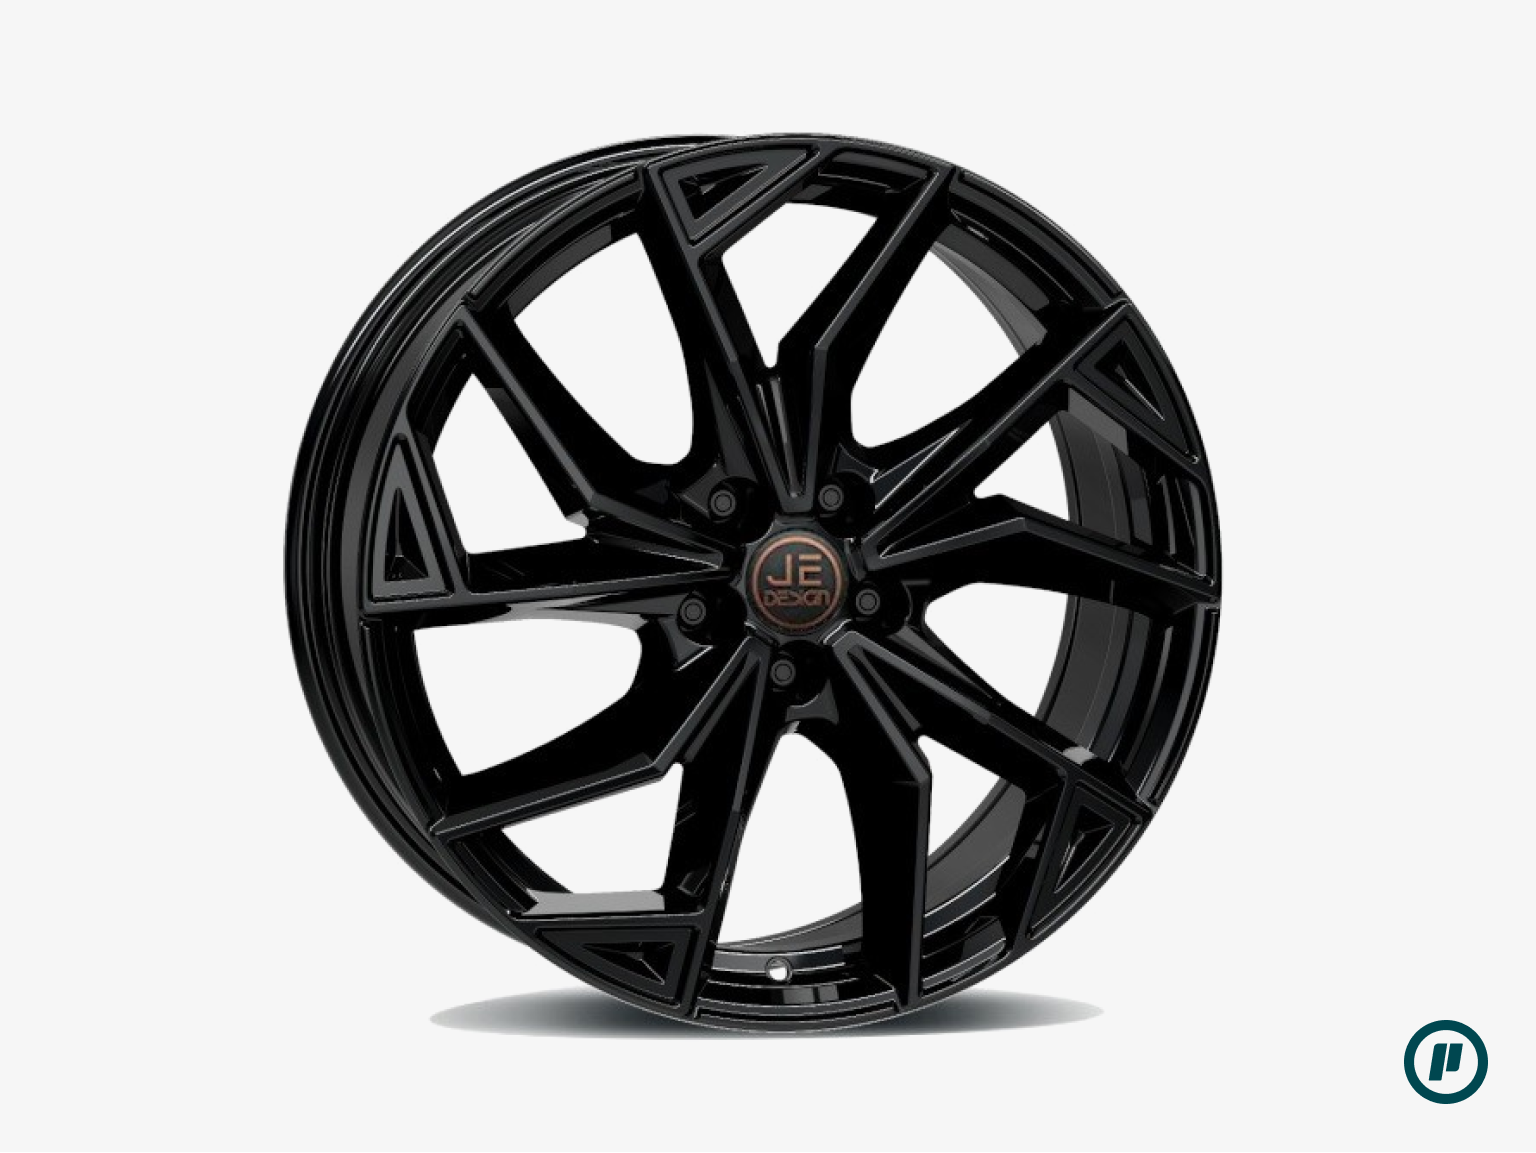 JE Design Wheels - Rubi Copper-R 18" x 7.5J | ET 45 | 5x112 [2 Colors]